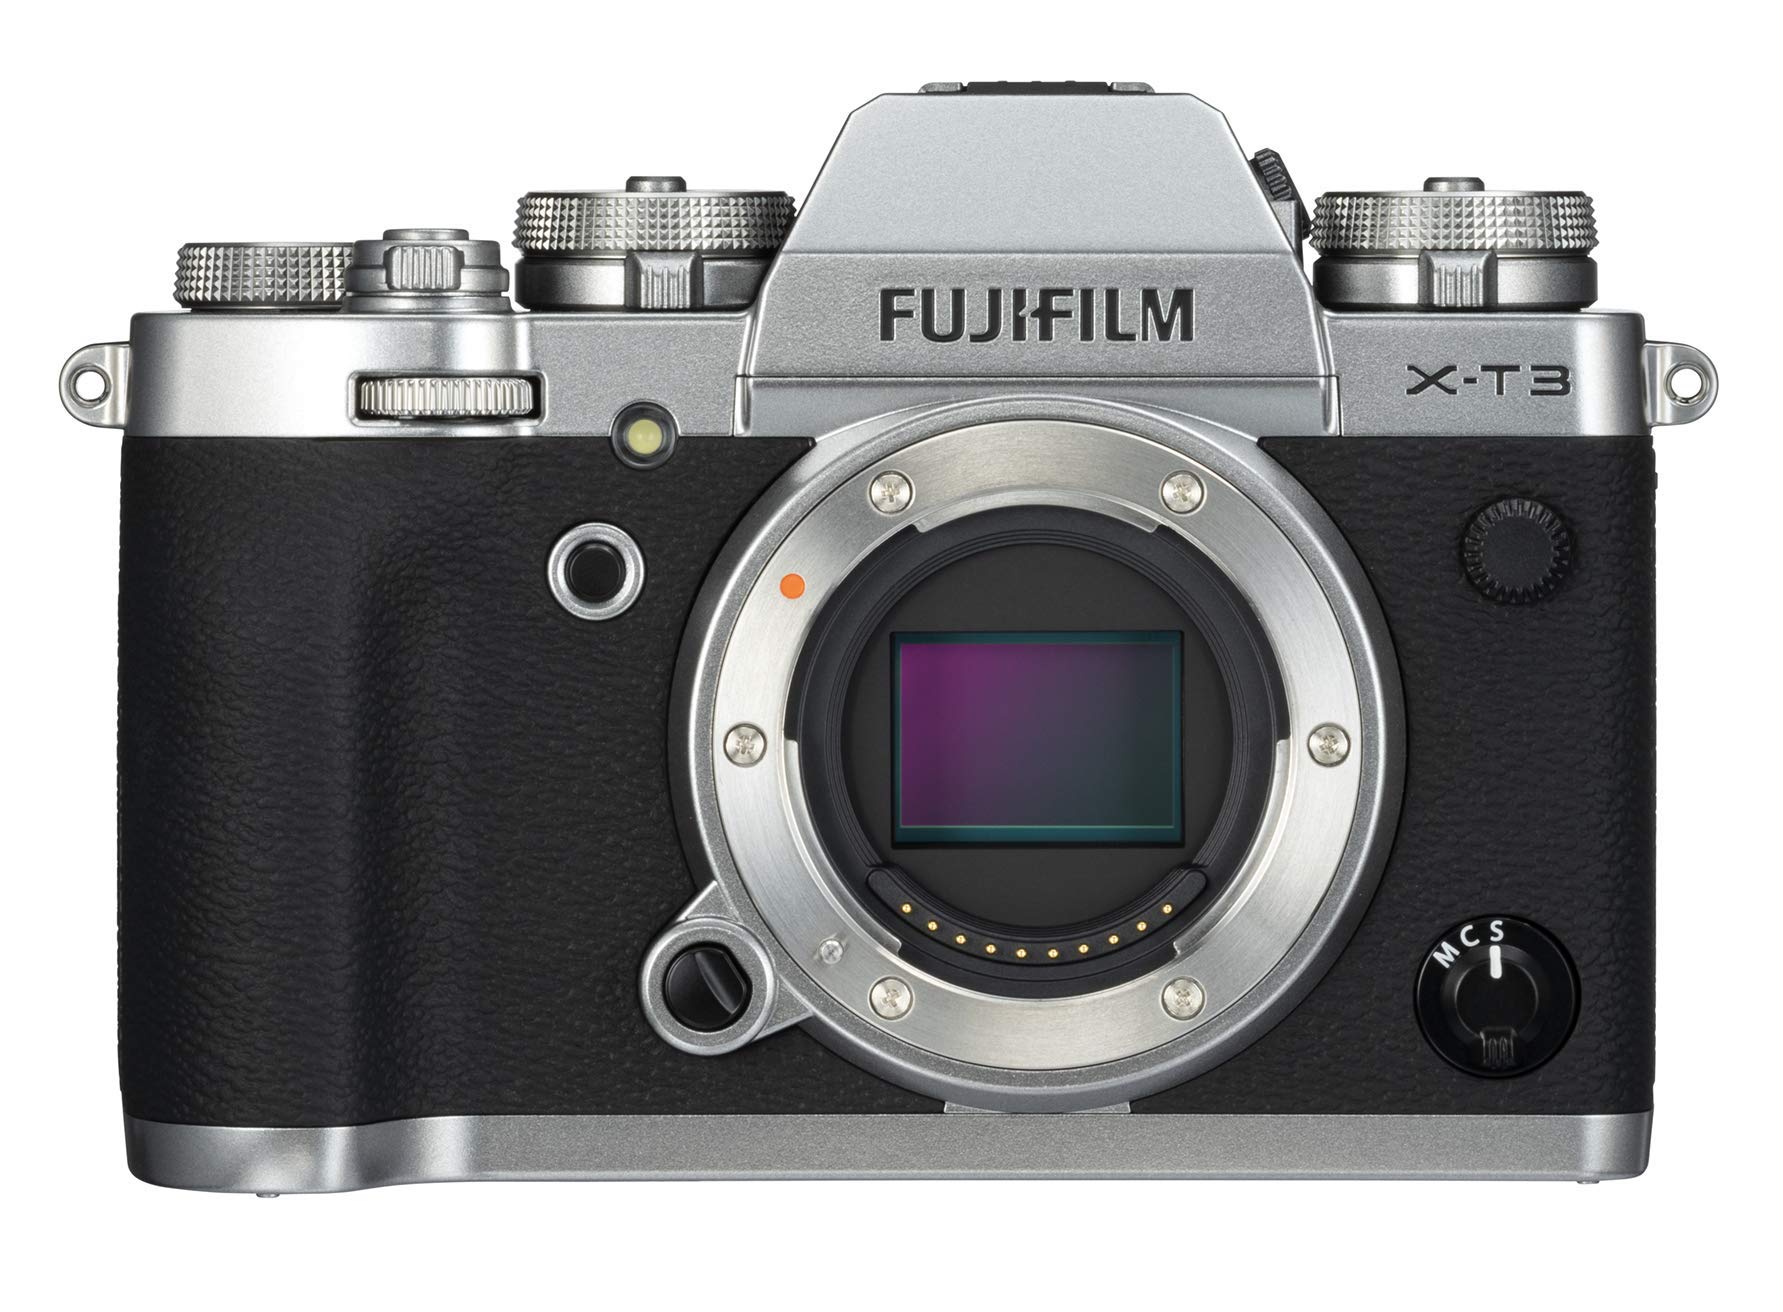 Le Fujifilm X-T3 est un appareil photo hybride haut de gamme doté d'un capteur APS-C de 26,1 mégapixels et d'un processeur d'image X-Processor 4. 